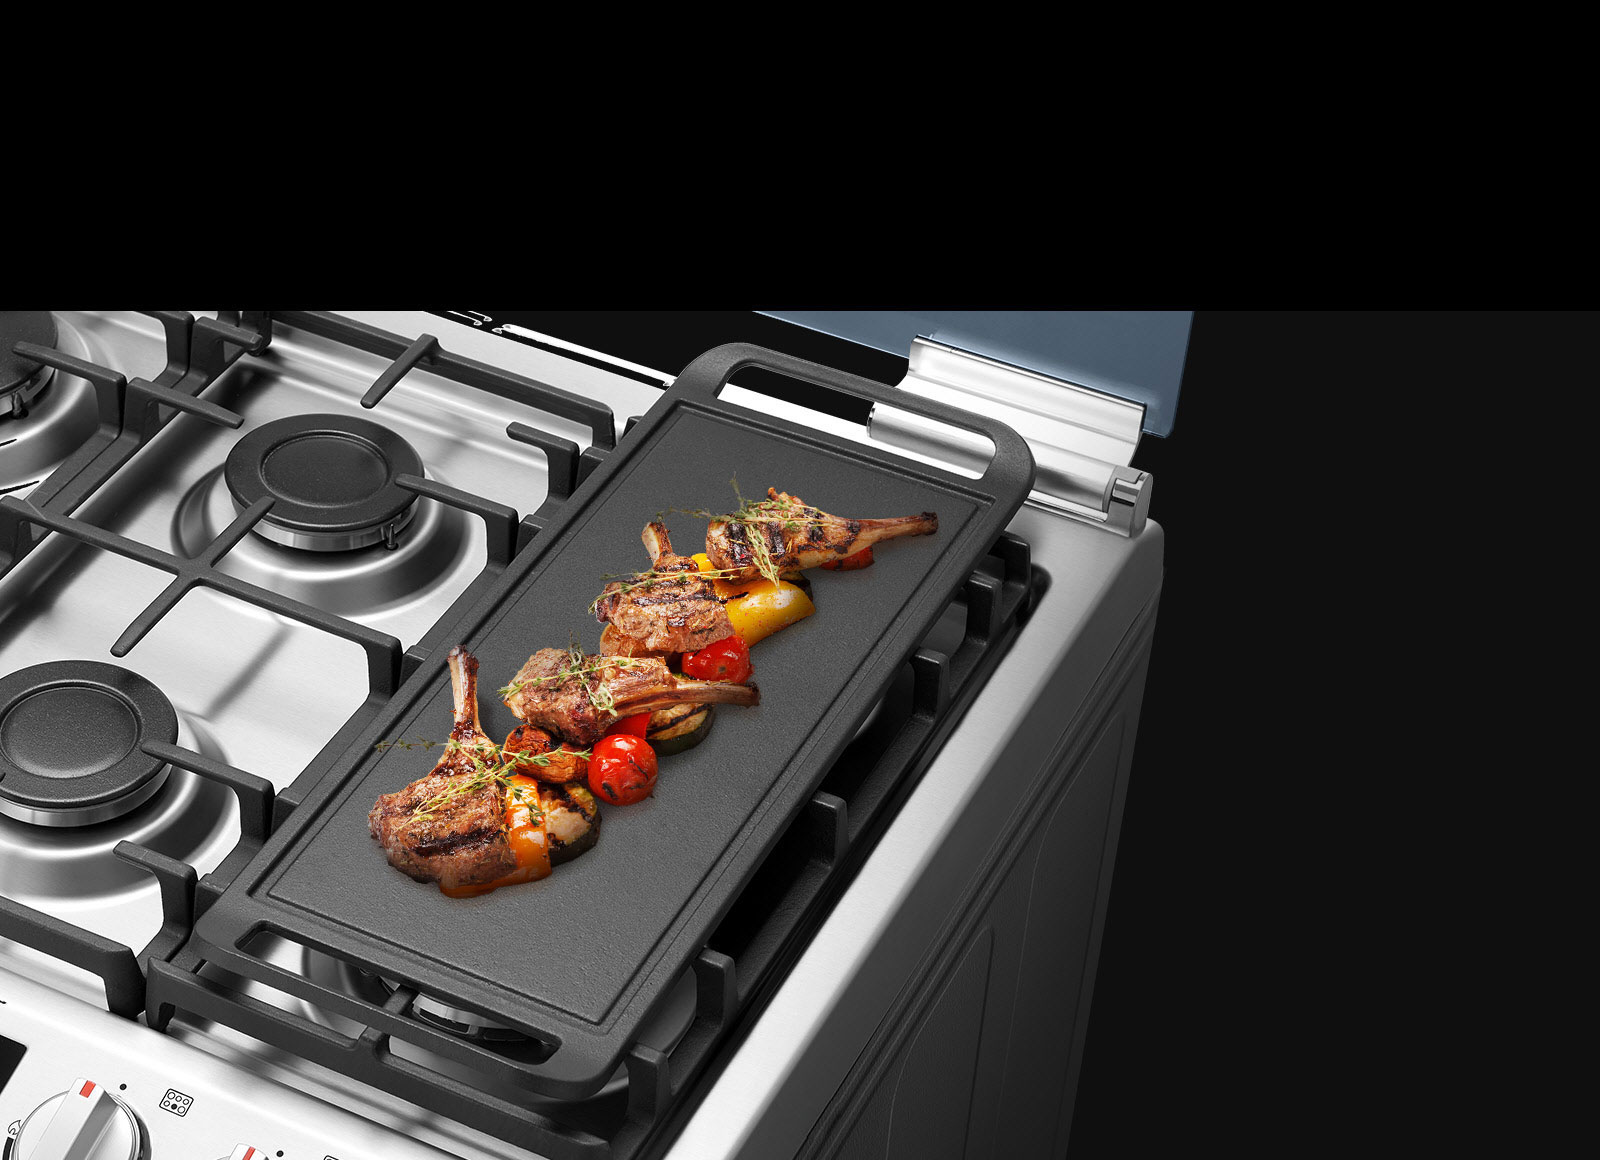 LG Cuisinière à gaz 4 Feux 60 CM, Sécurité totale, Système de chauffage  combiné, Rôtissoire